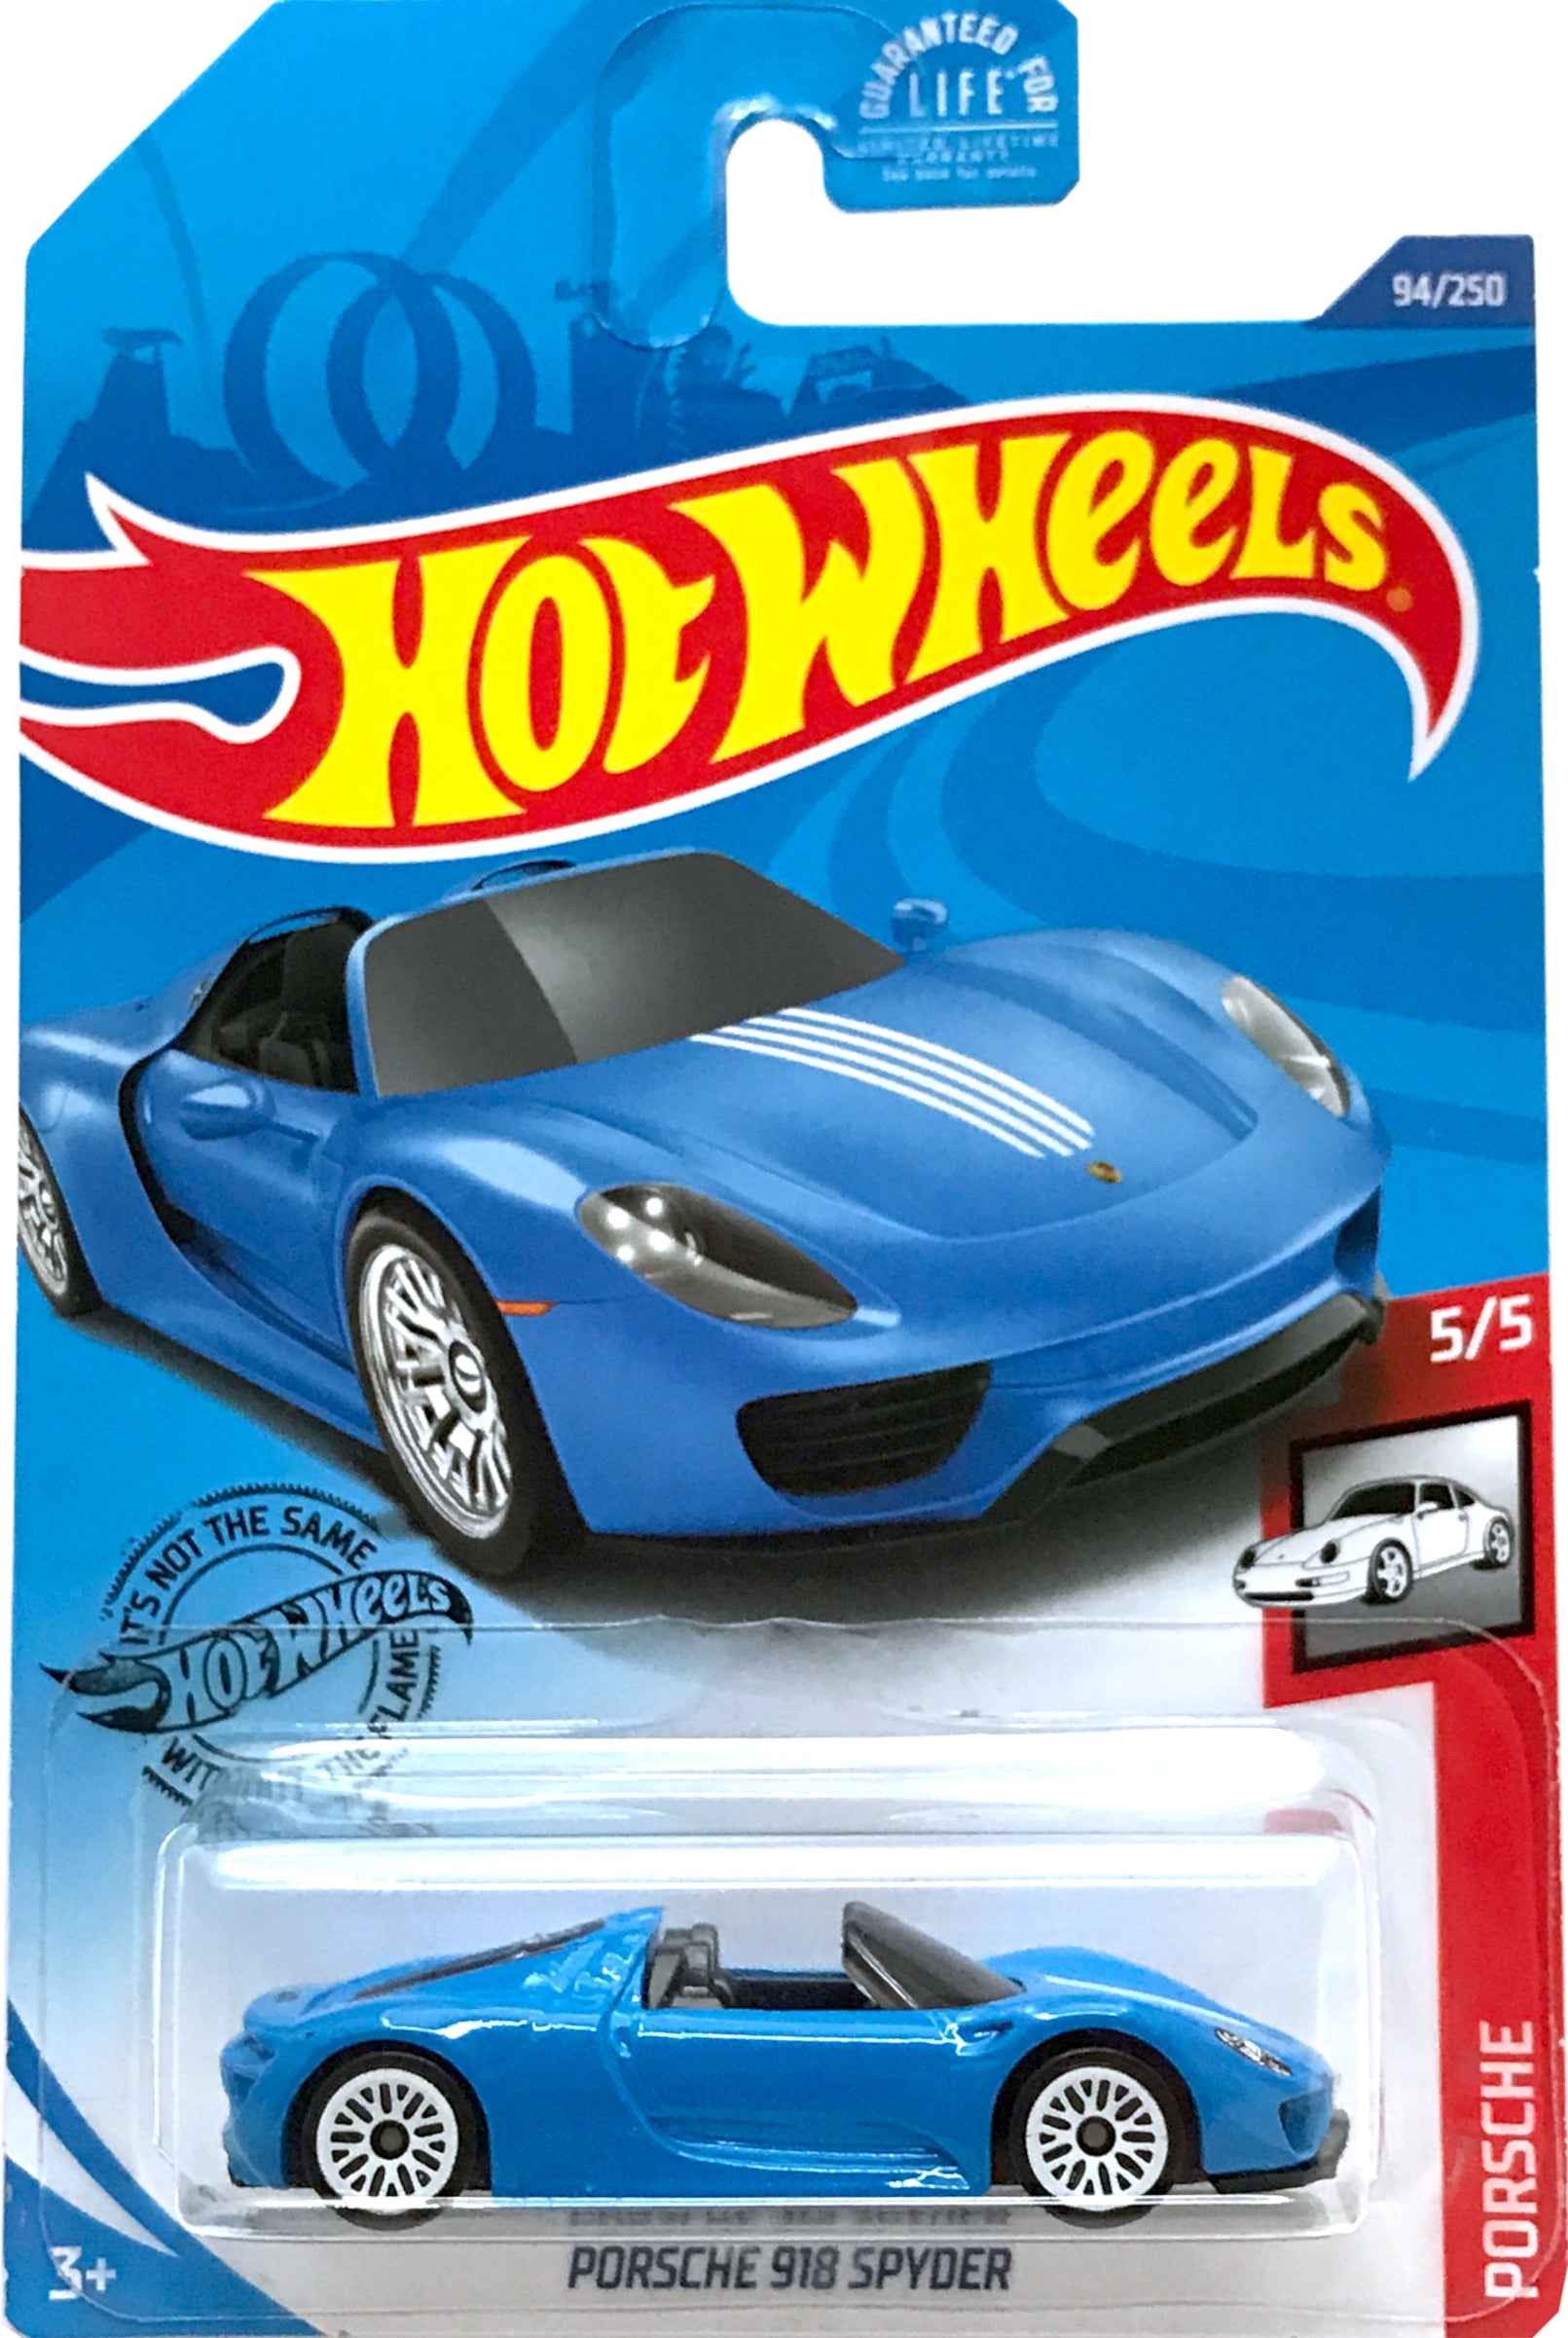 2020 Hot Wheels Mainline #094 - Porsche 918 Spyder (Blue) GHD22